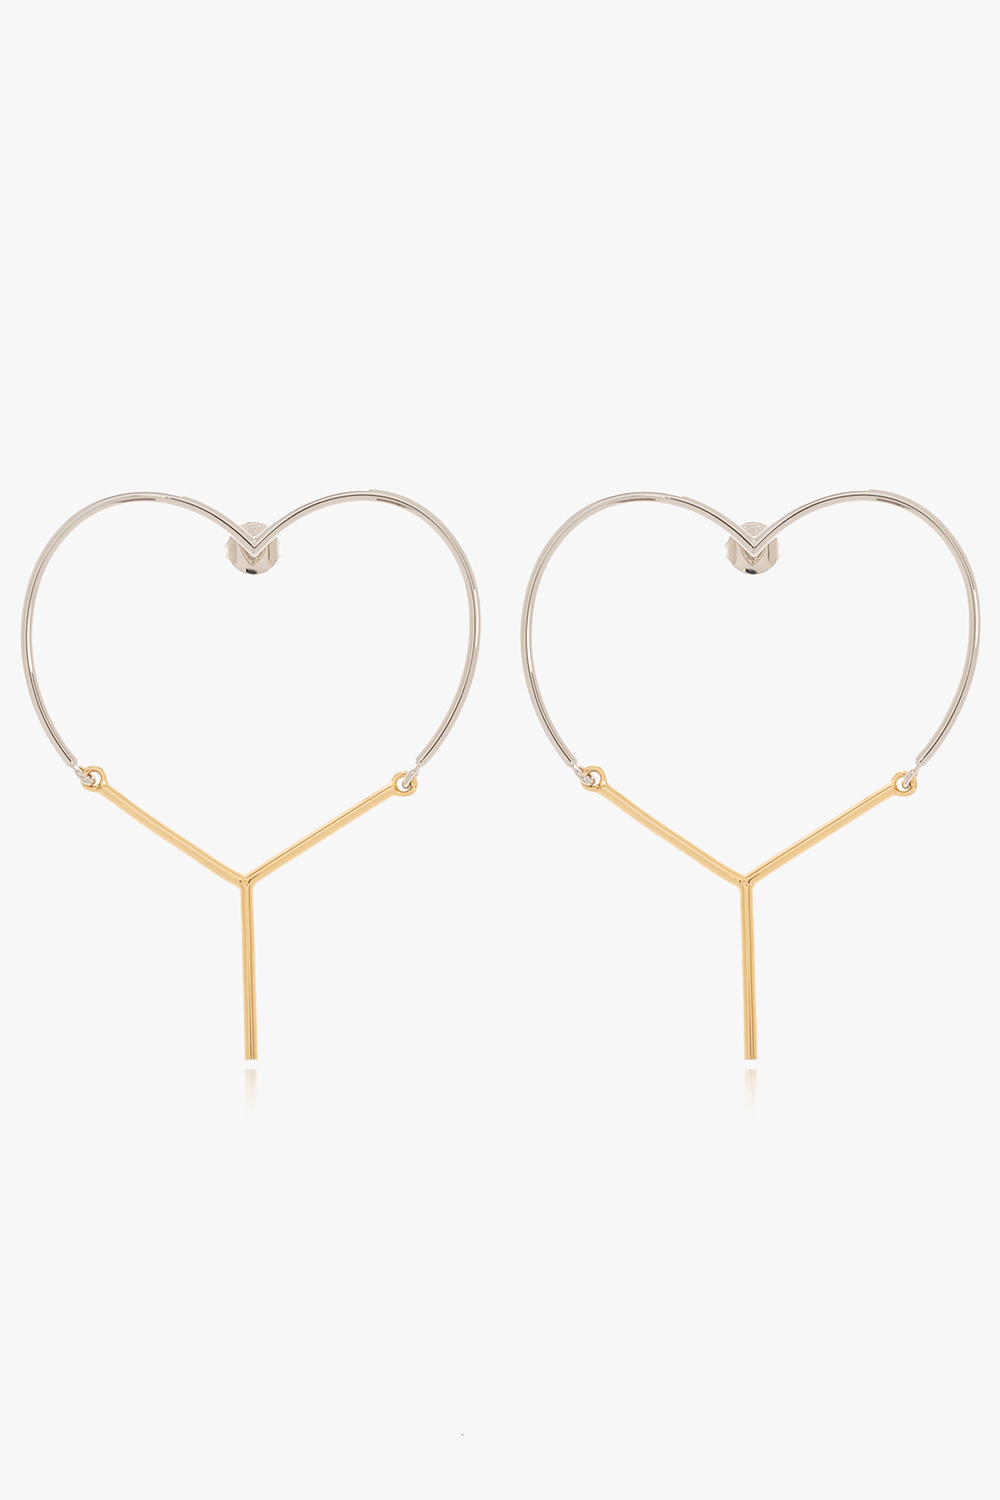 Y Project Heart-shaped earrings